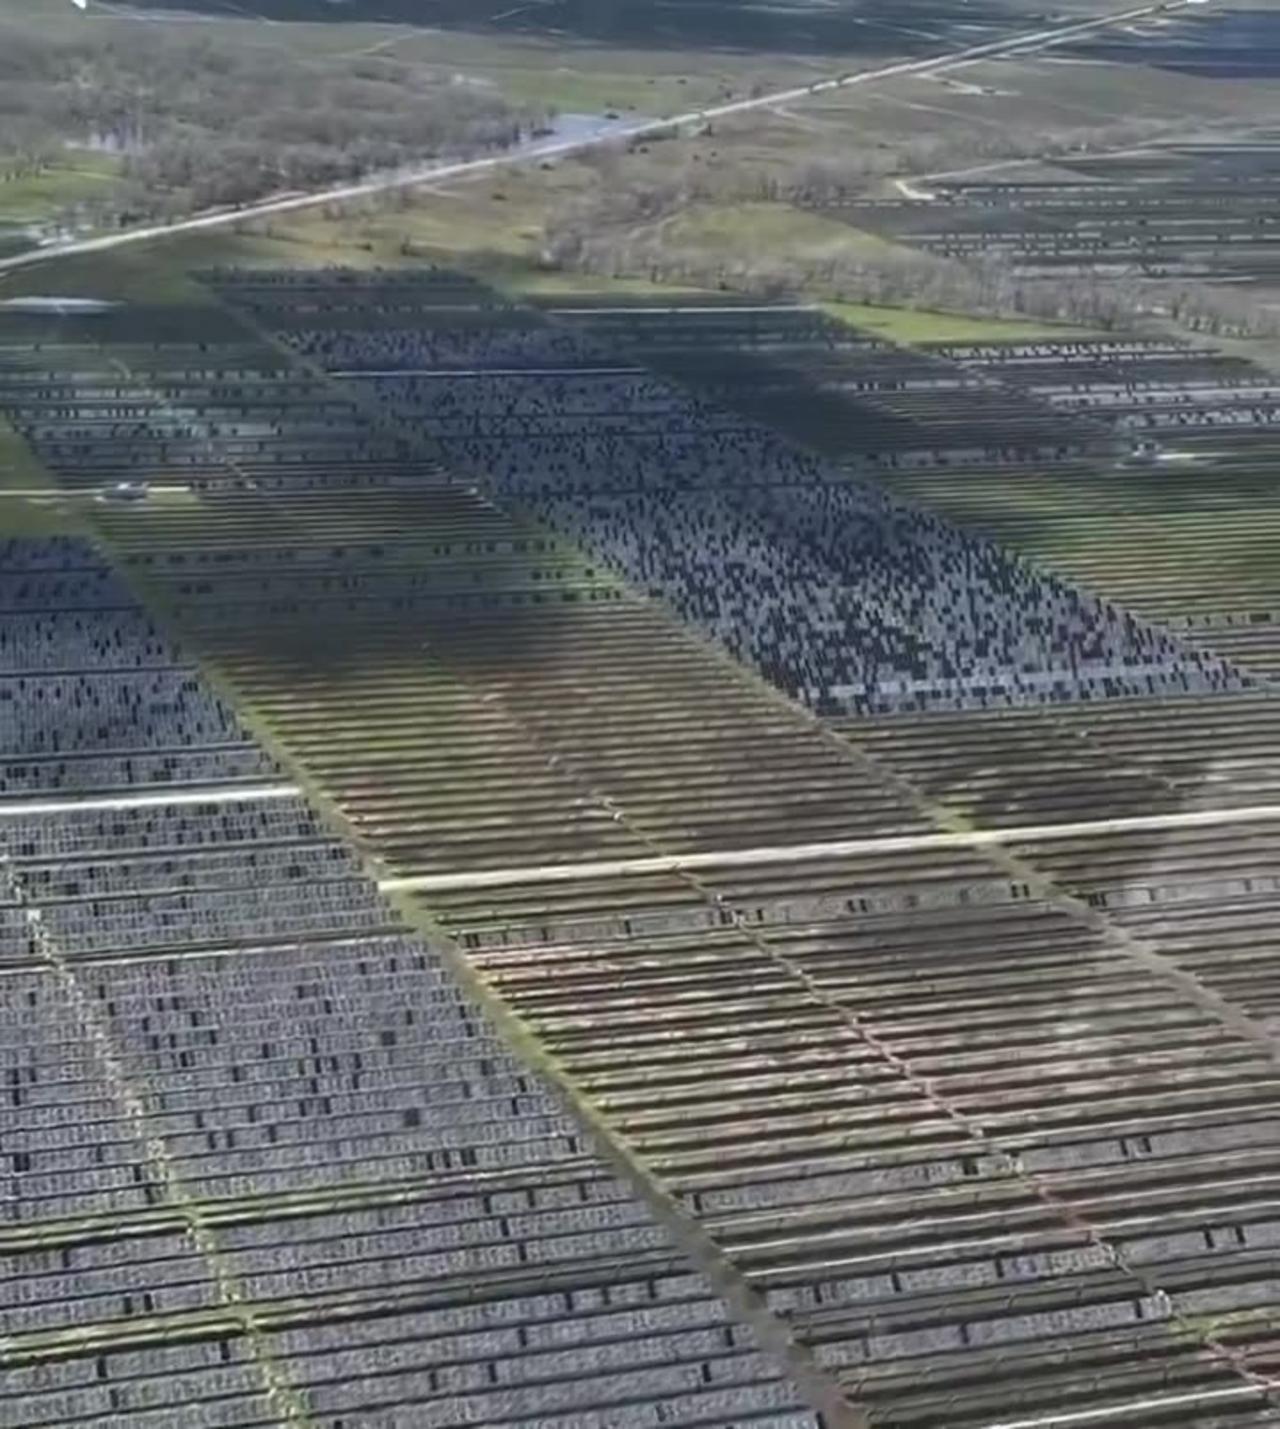 Hail storm in Damon texas on 3/24/24 destroys 1,000’s of acres of solar farms.